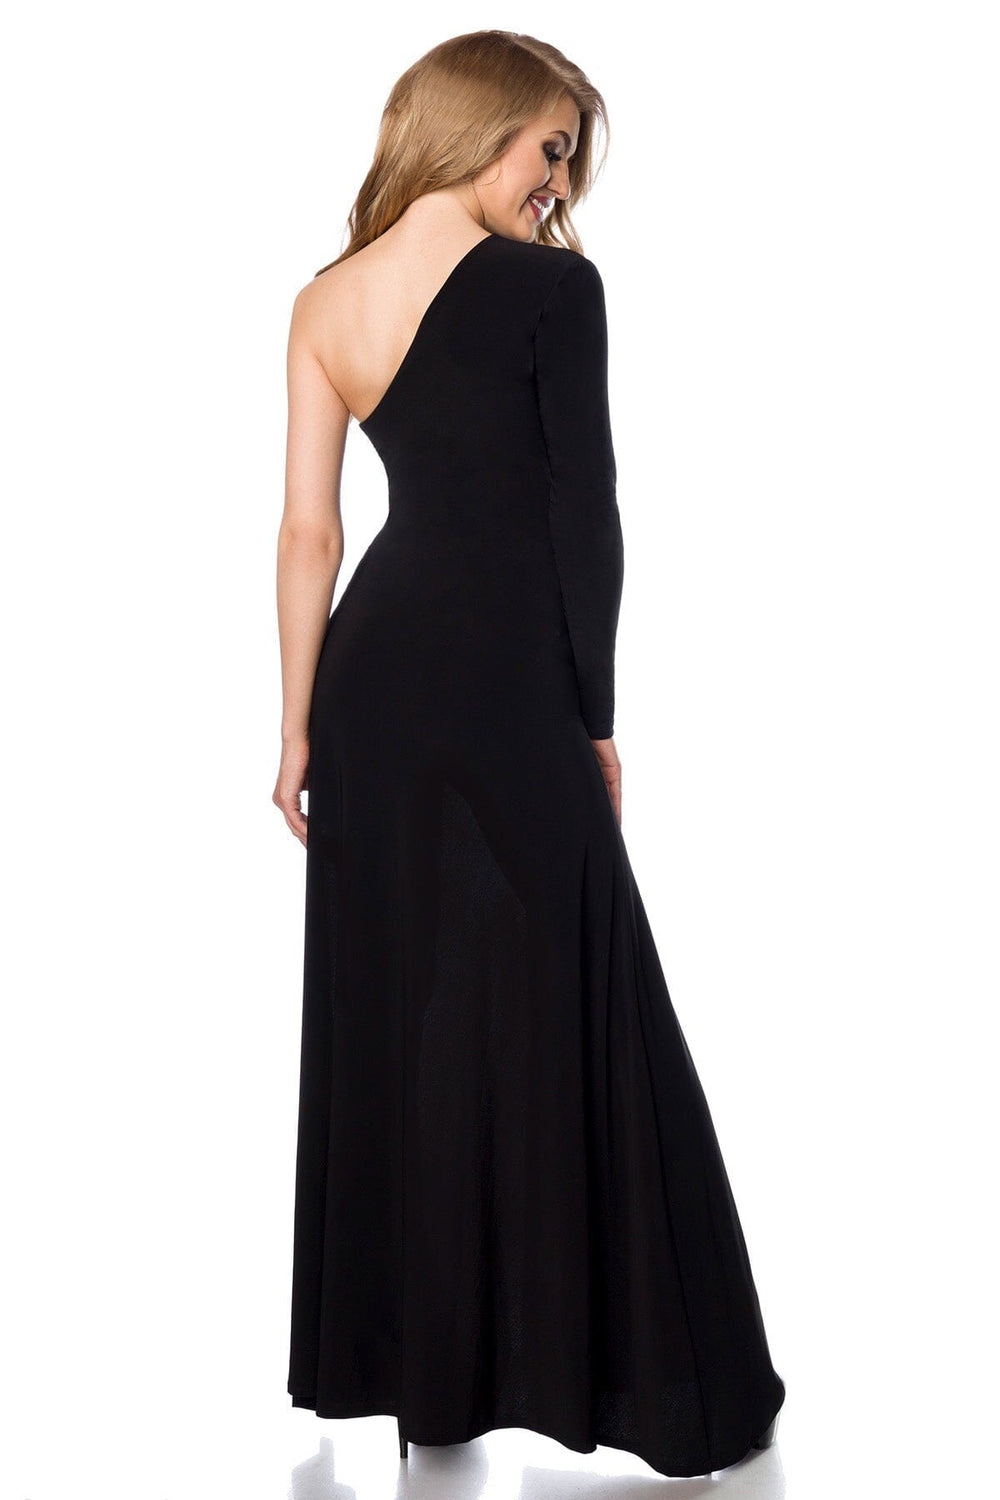 Asymmetrical Shoulder, Long Sleeve, Floor Length Dress-Edgy Dresses-Saresia-SEXYSHOES.COM